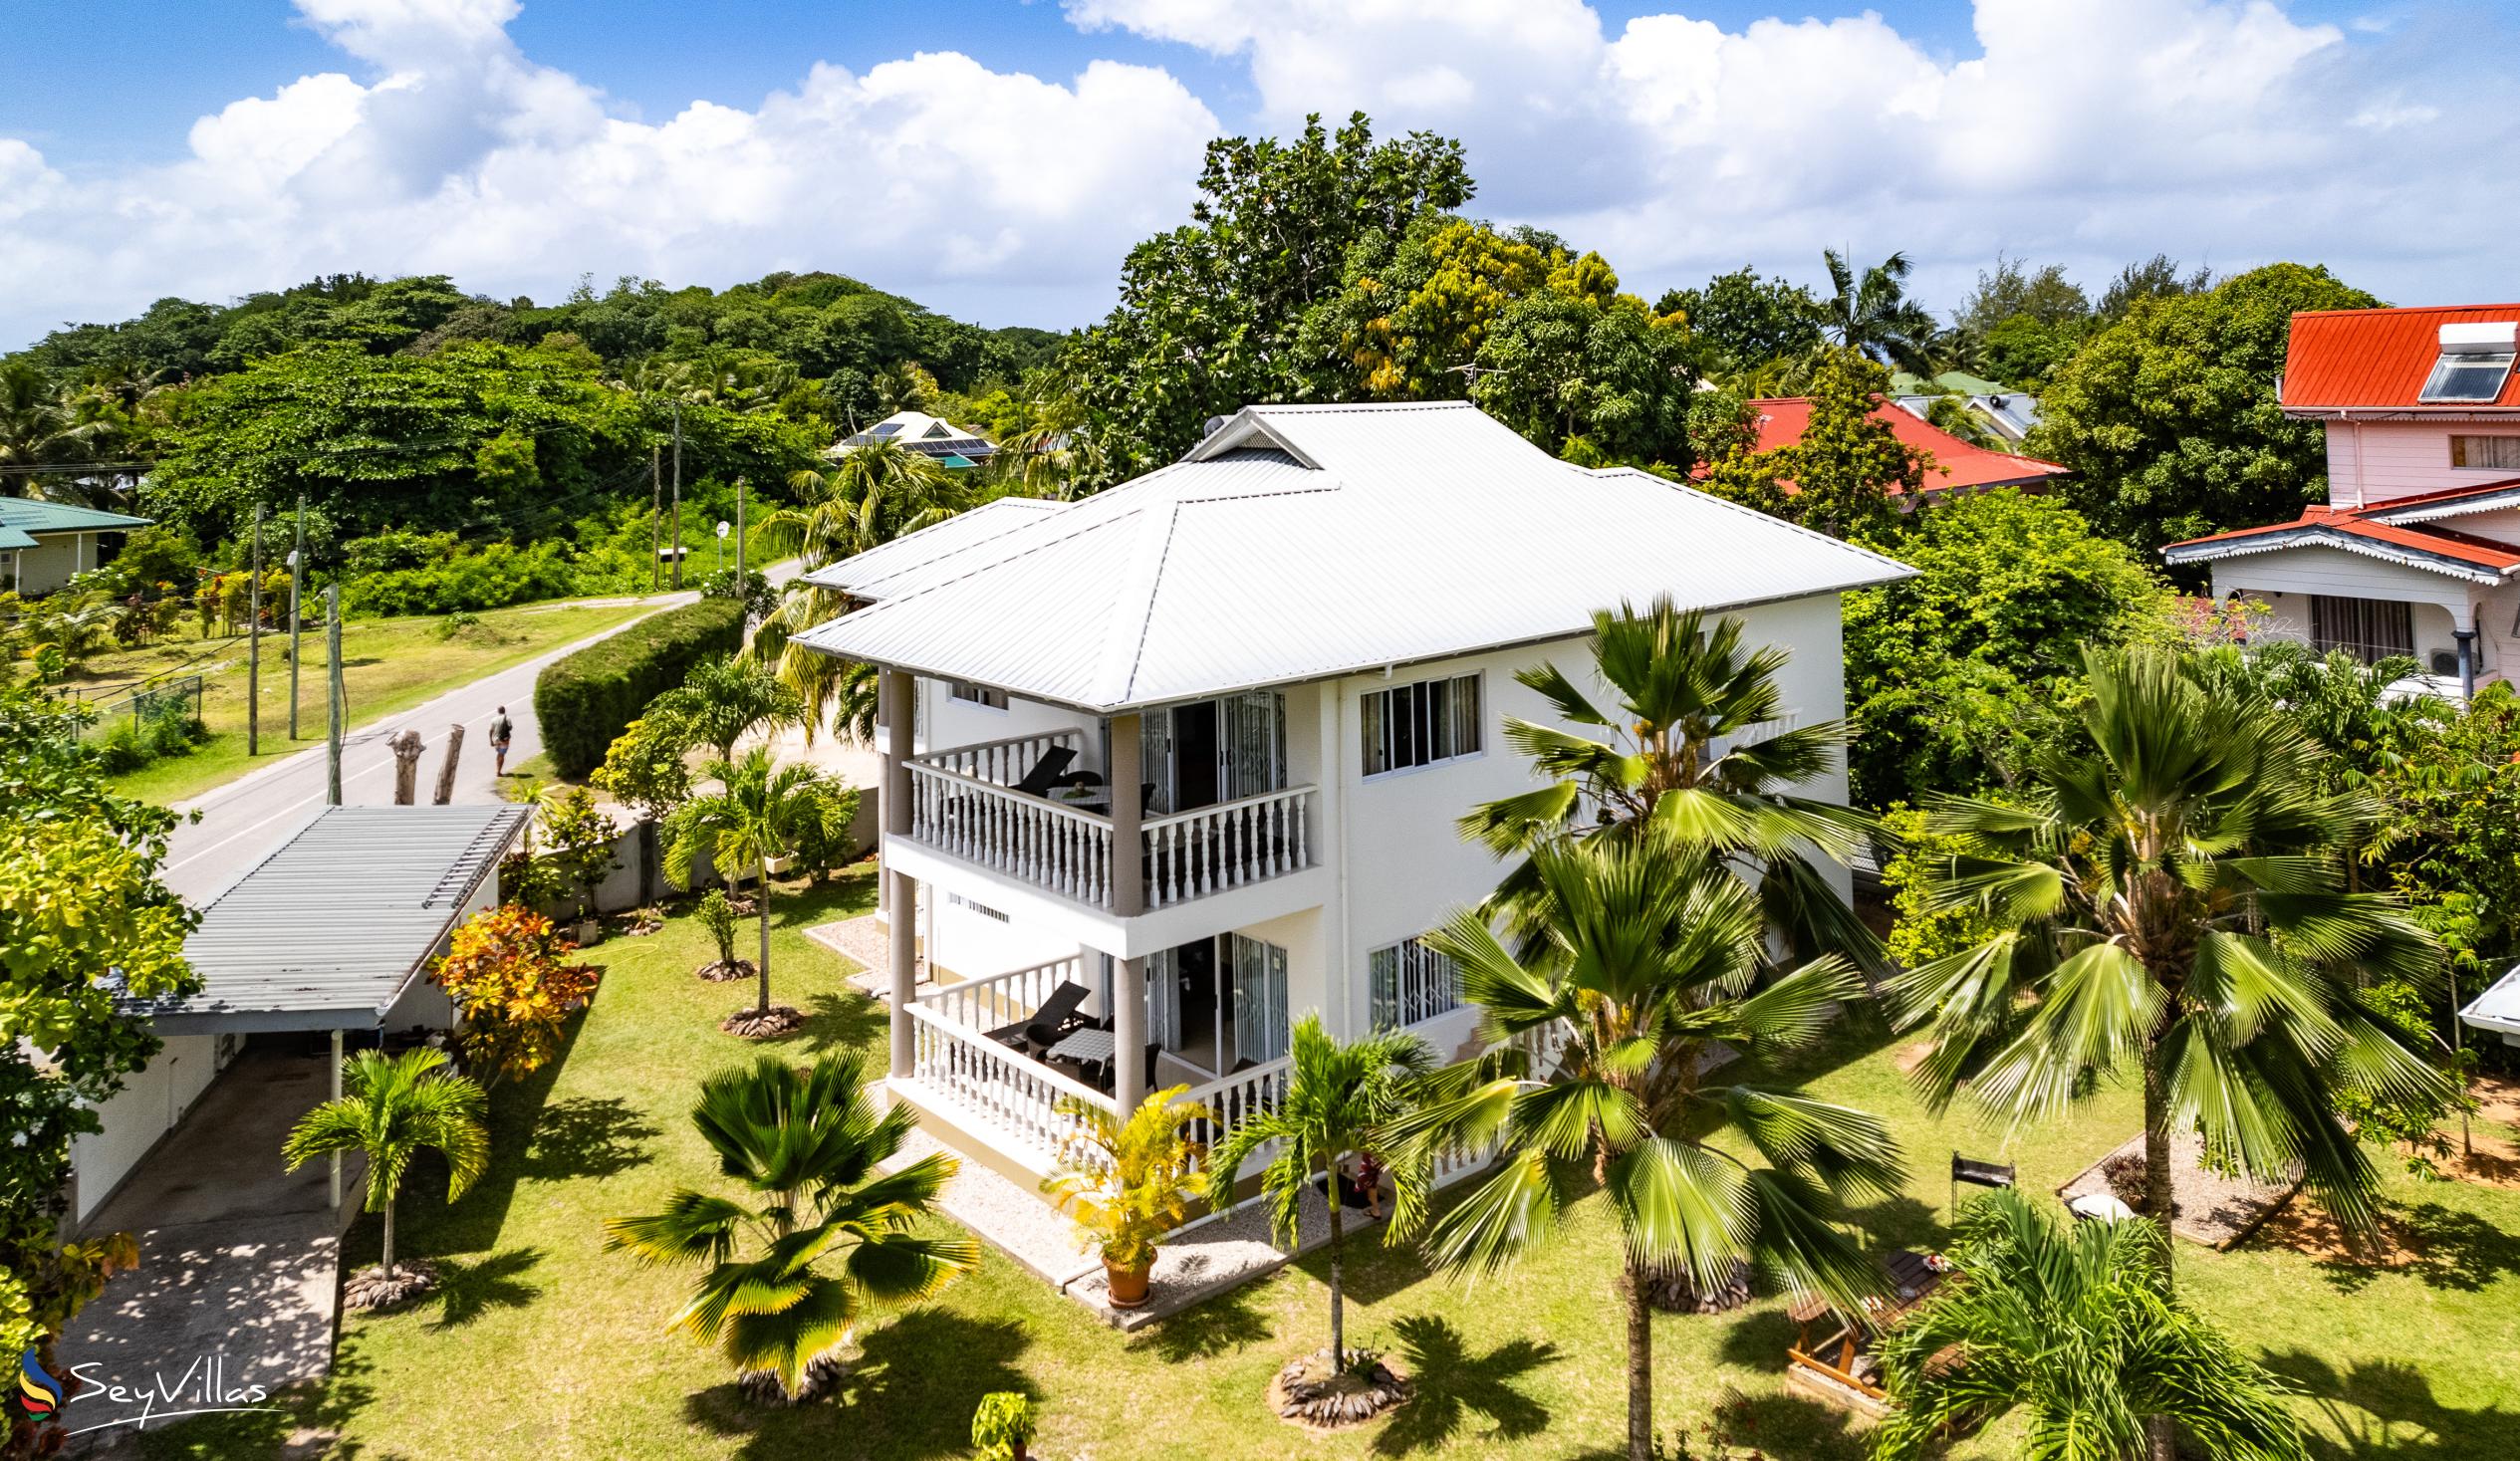 Foto 3: Casa Tara Villas - Aussenbereich - Praslin (Seychellen)